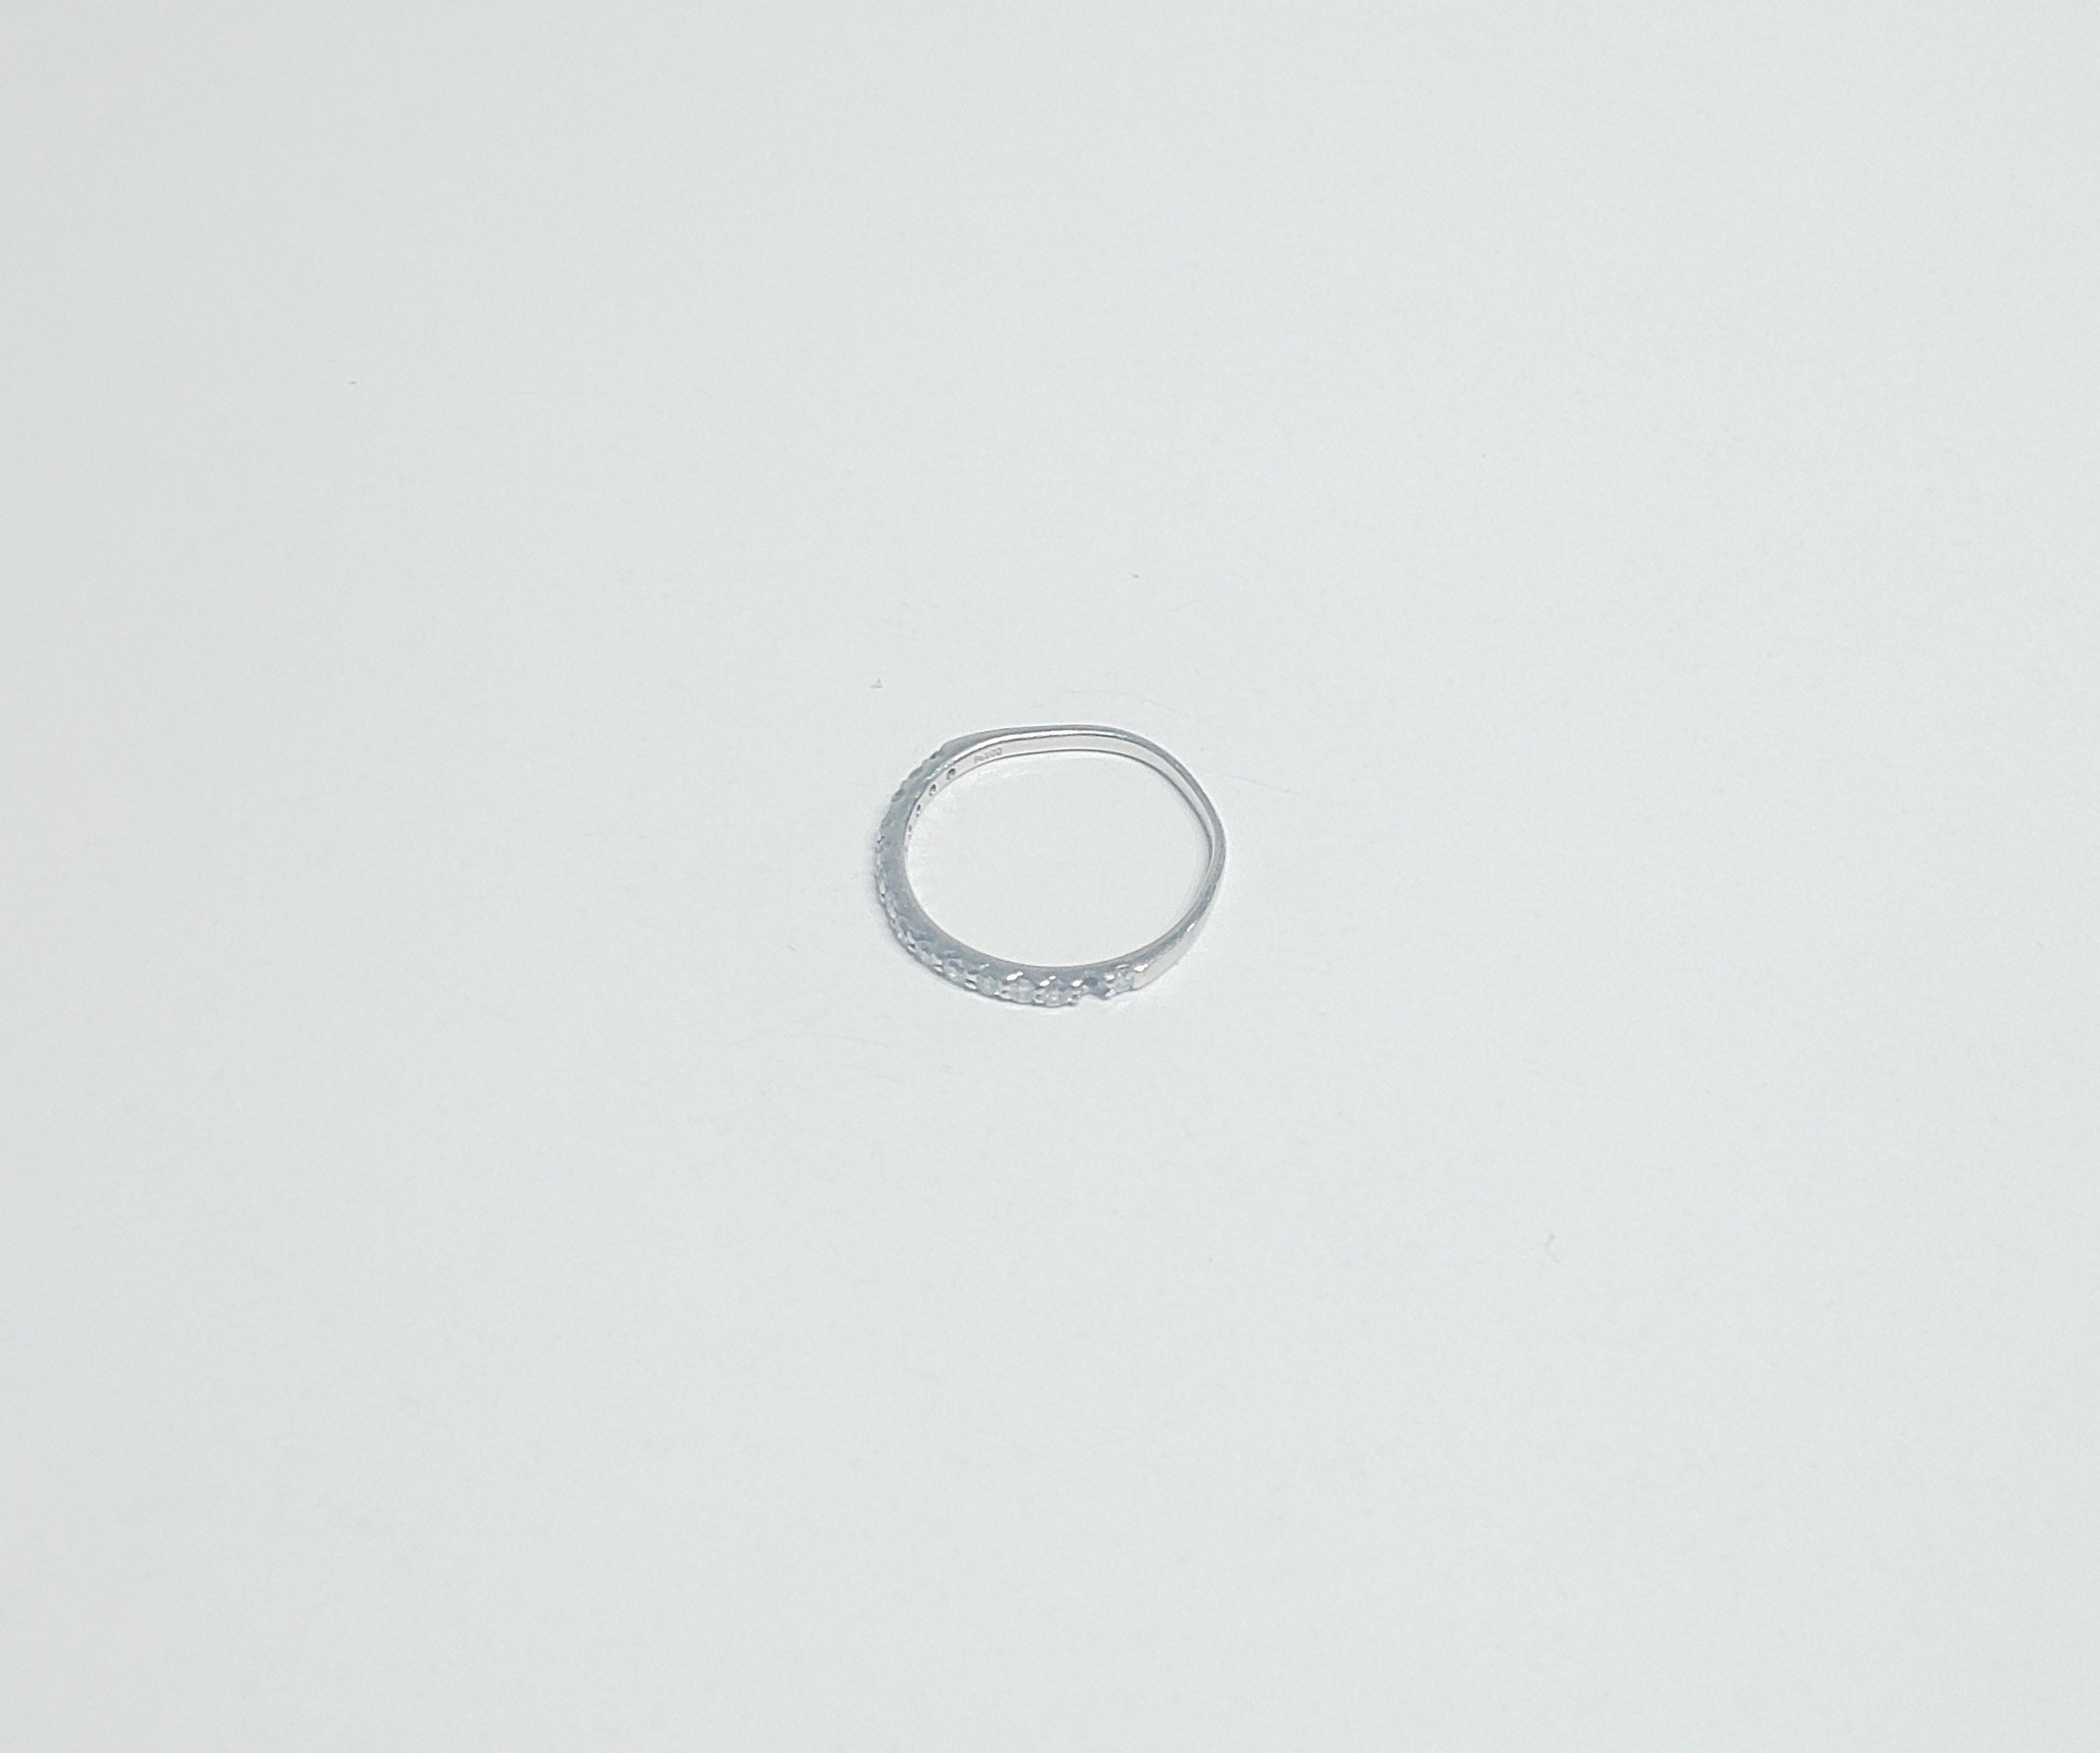 プラチナ900 ダイヤ0.30ct 指輪 1.5g | まるあ質店 愛媛県今治市の女性に優しい質屋